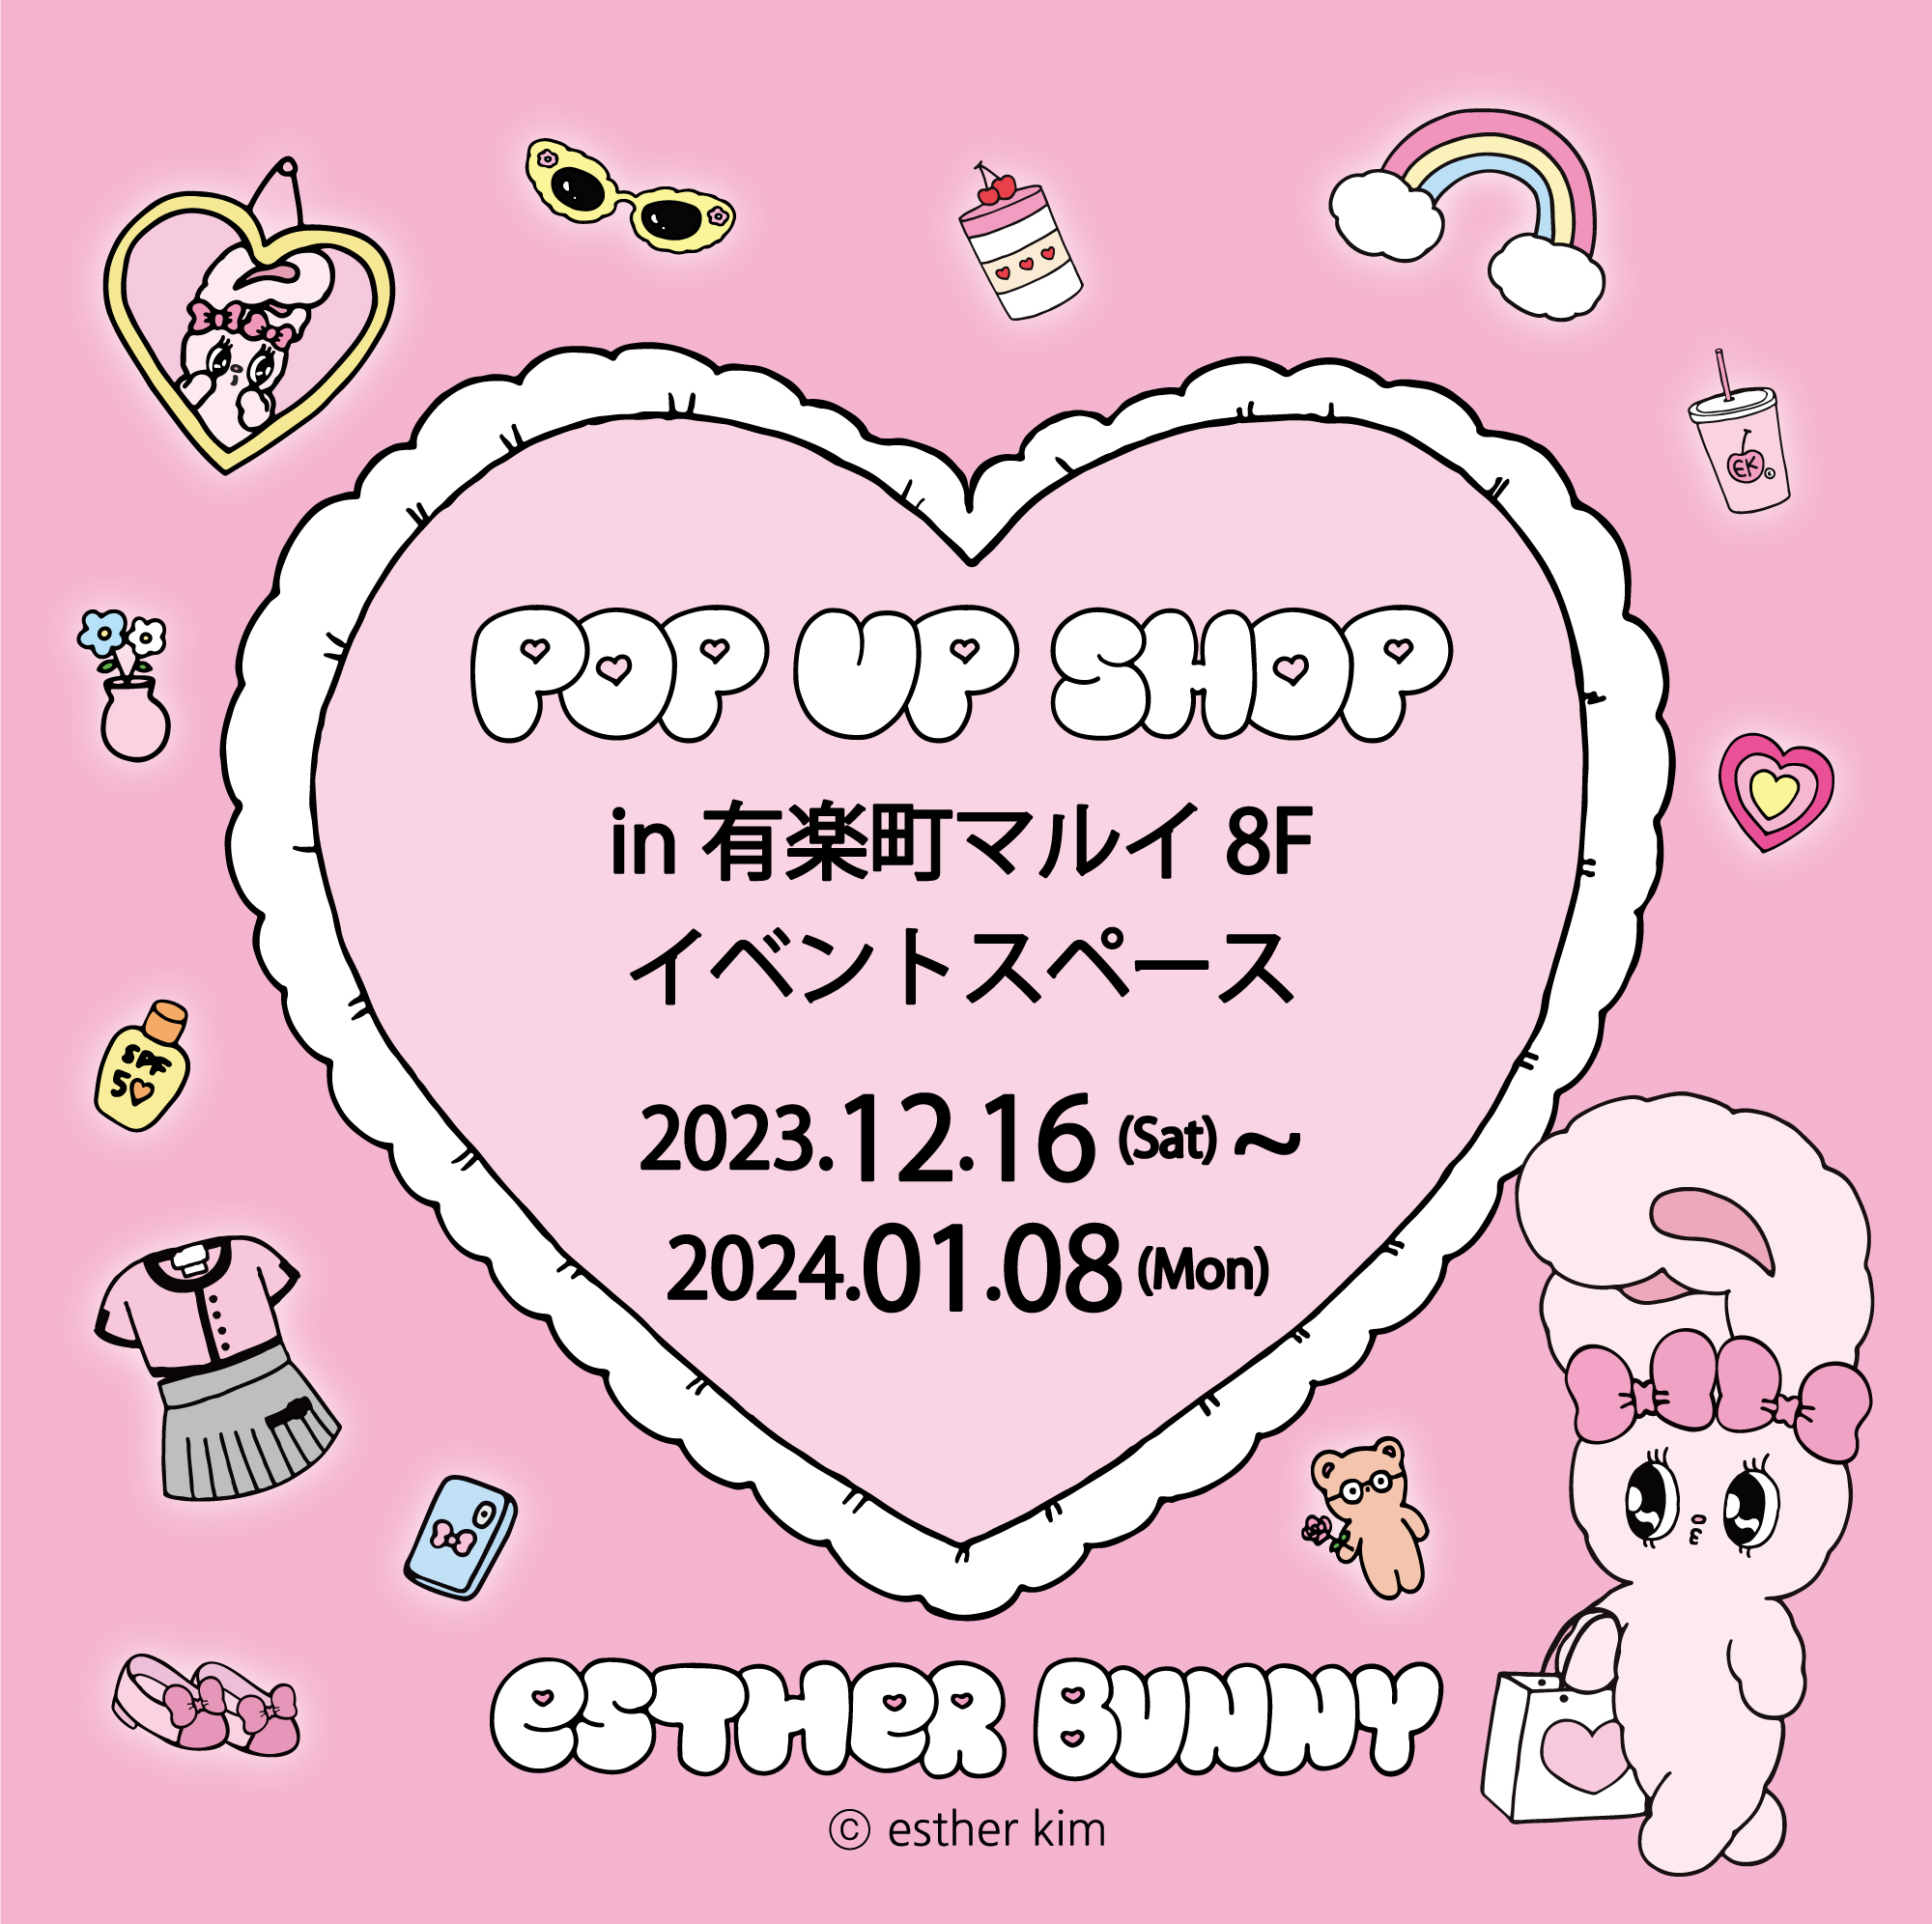 「POPUP SHOP」有楽町マルイ 8F イベントスペース